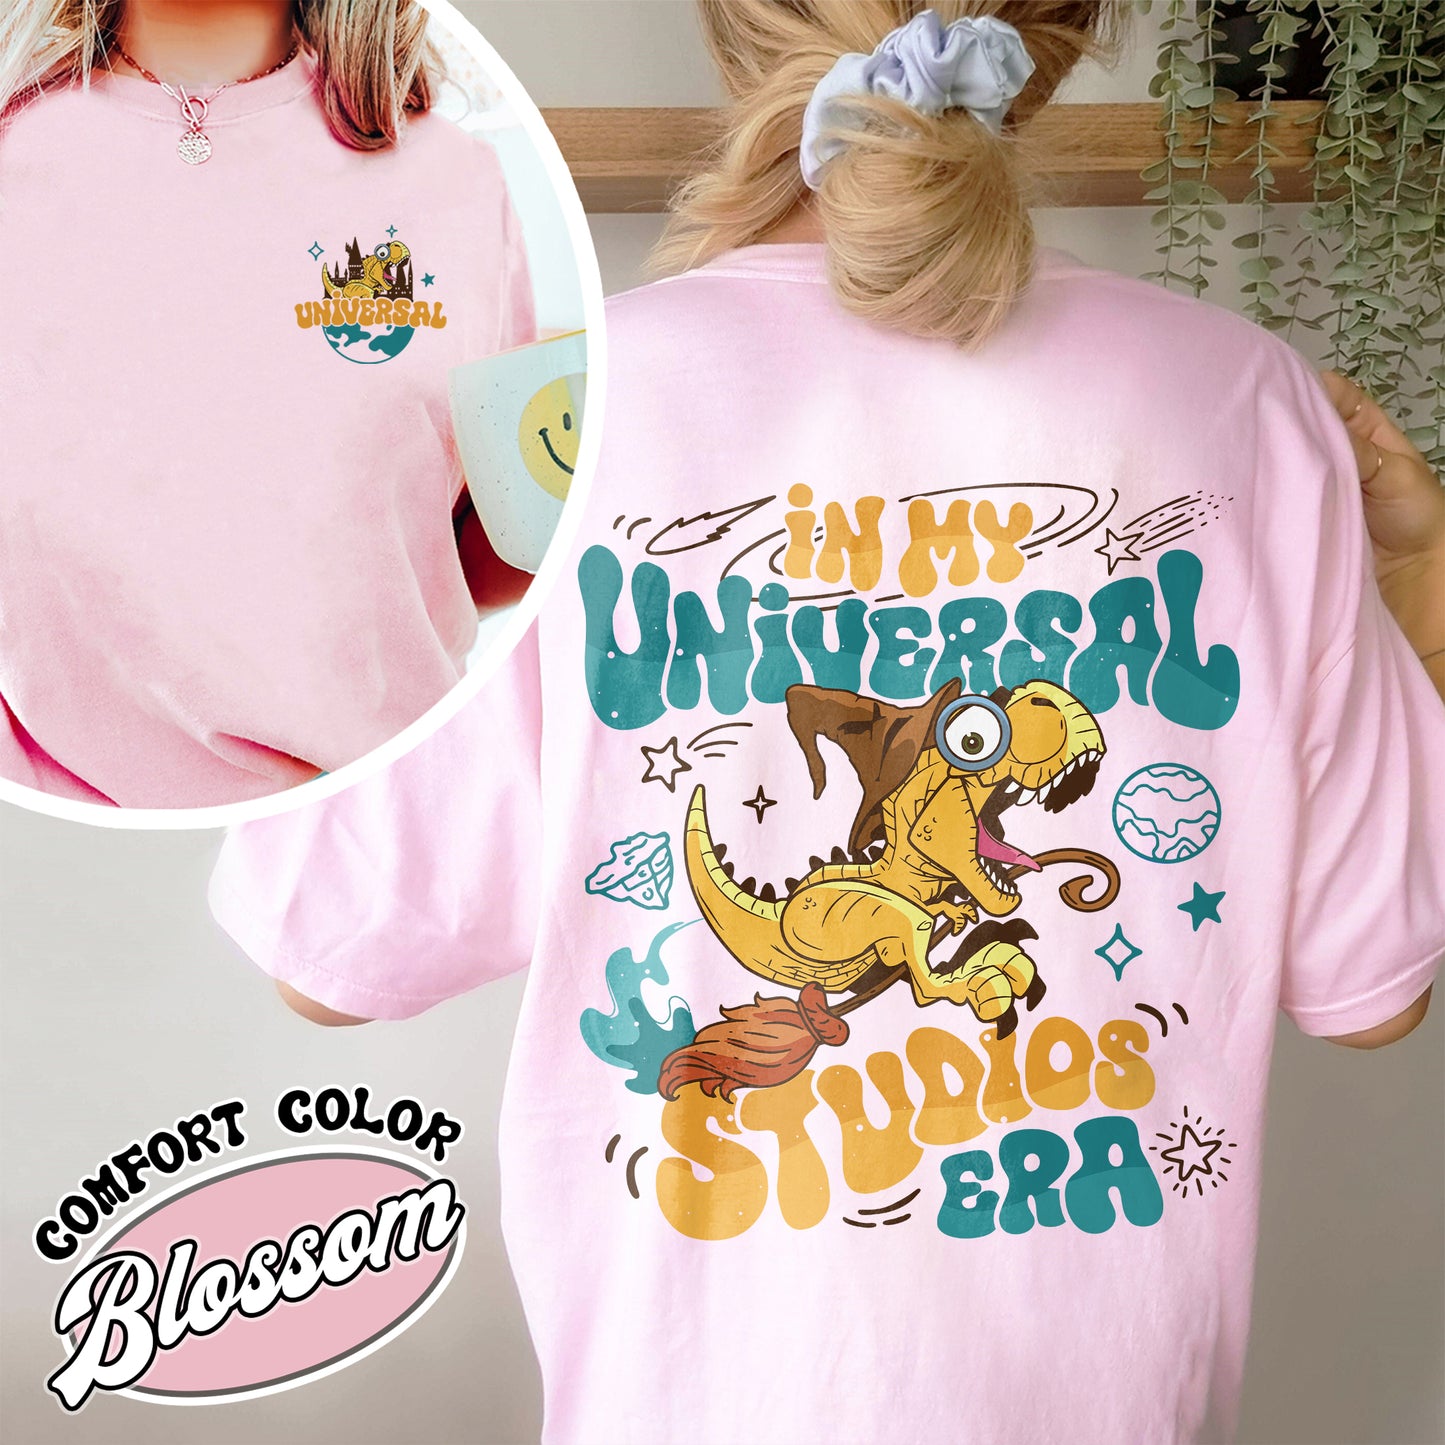 In My Universal Studios Era Comfort Color Shirt, in My Universal Studios Era, Going to Universal Studio, Universal Studios Trip 2024, Universal Studios Trip